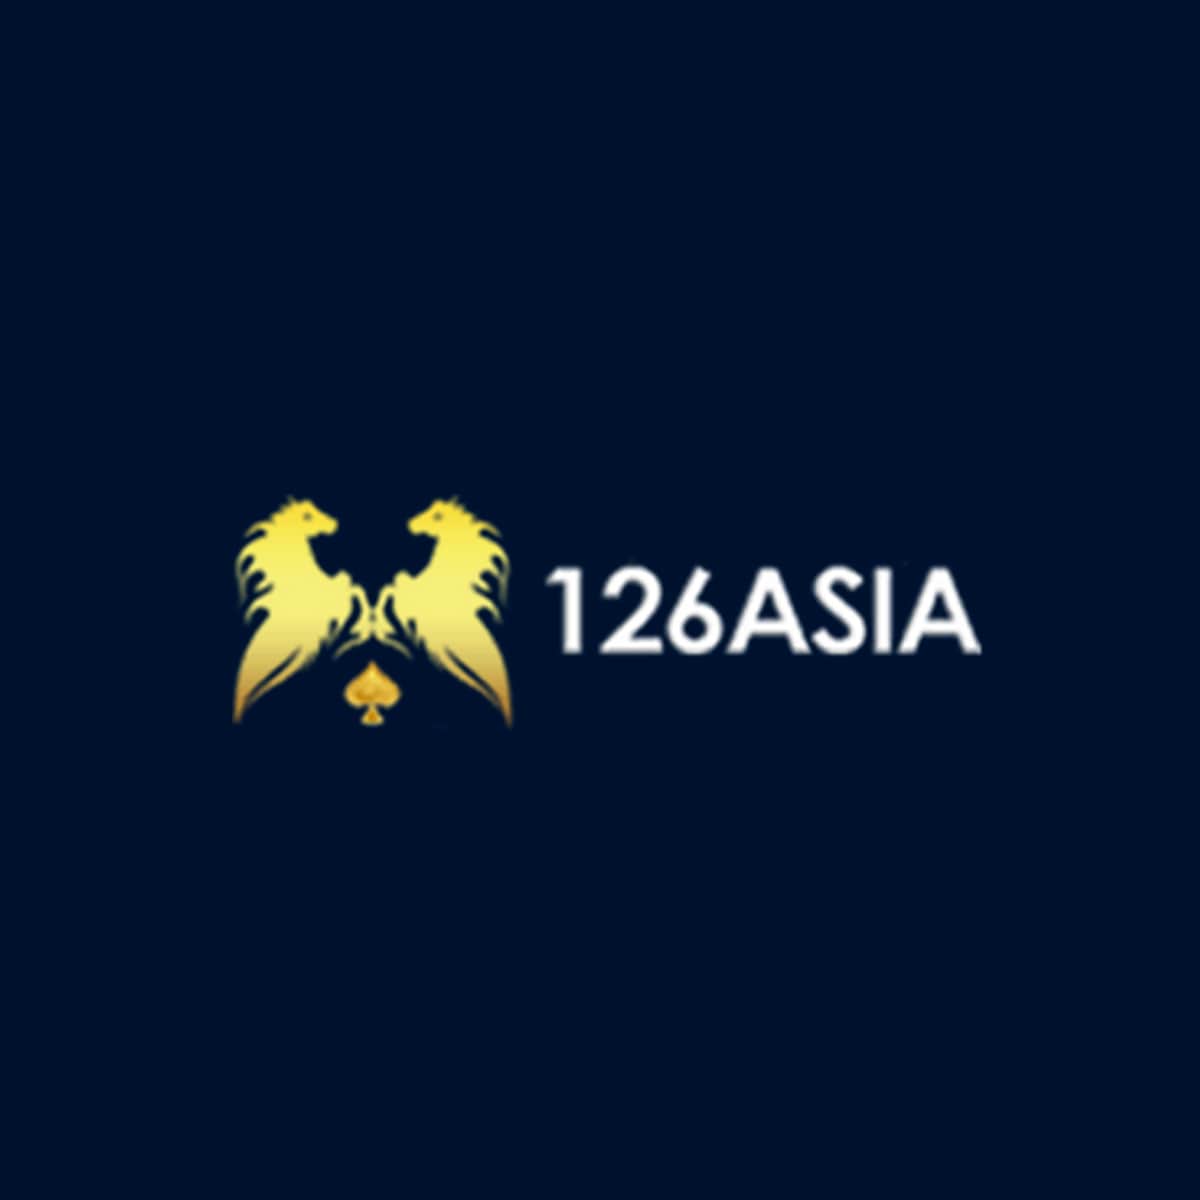 126Asia Online Casino Singapore